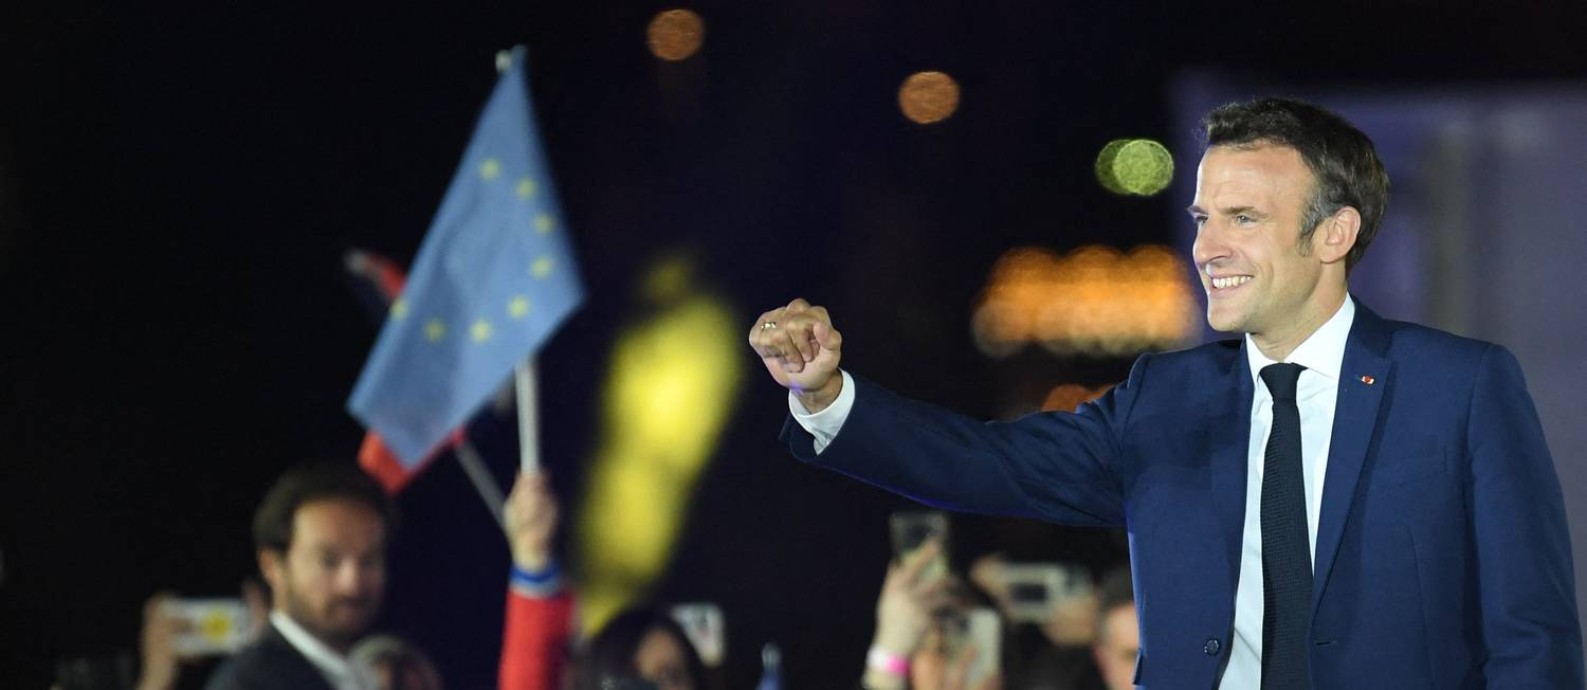 Presidente reeleito da França, Emmanuel Macron, em discurso da vitória em Paris Foto: BERTRAND GUAY / AFP